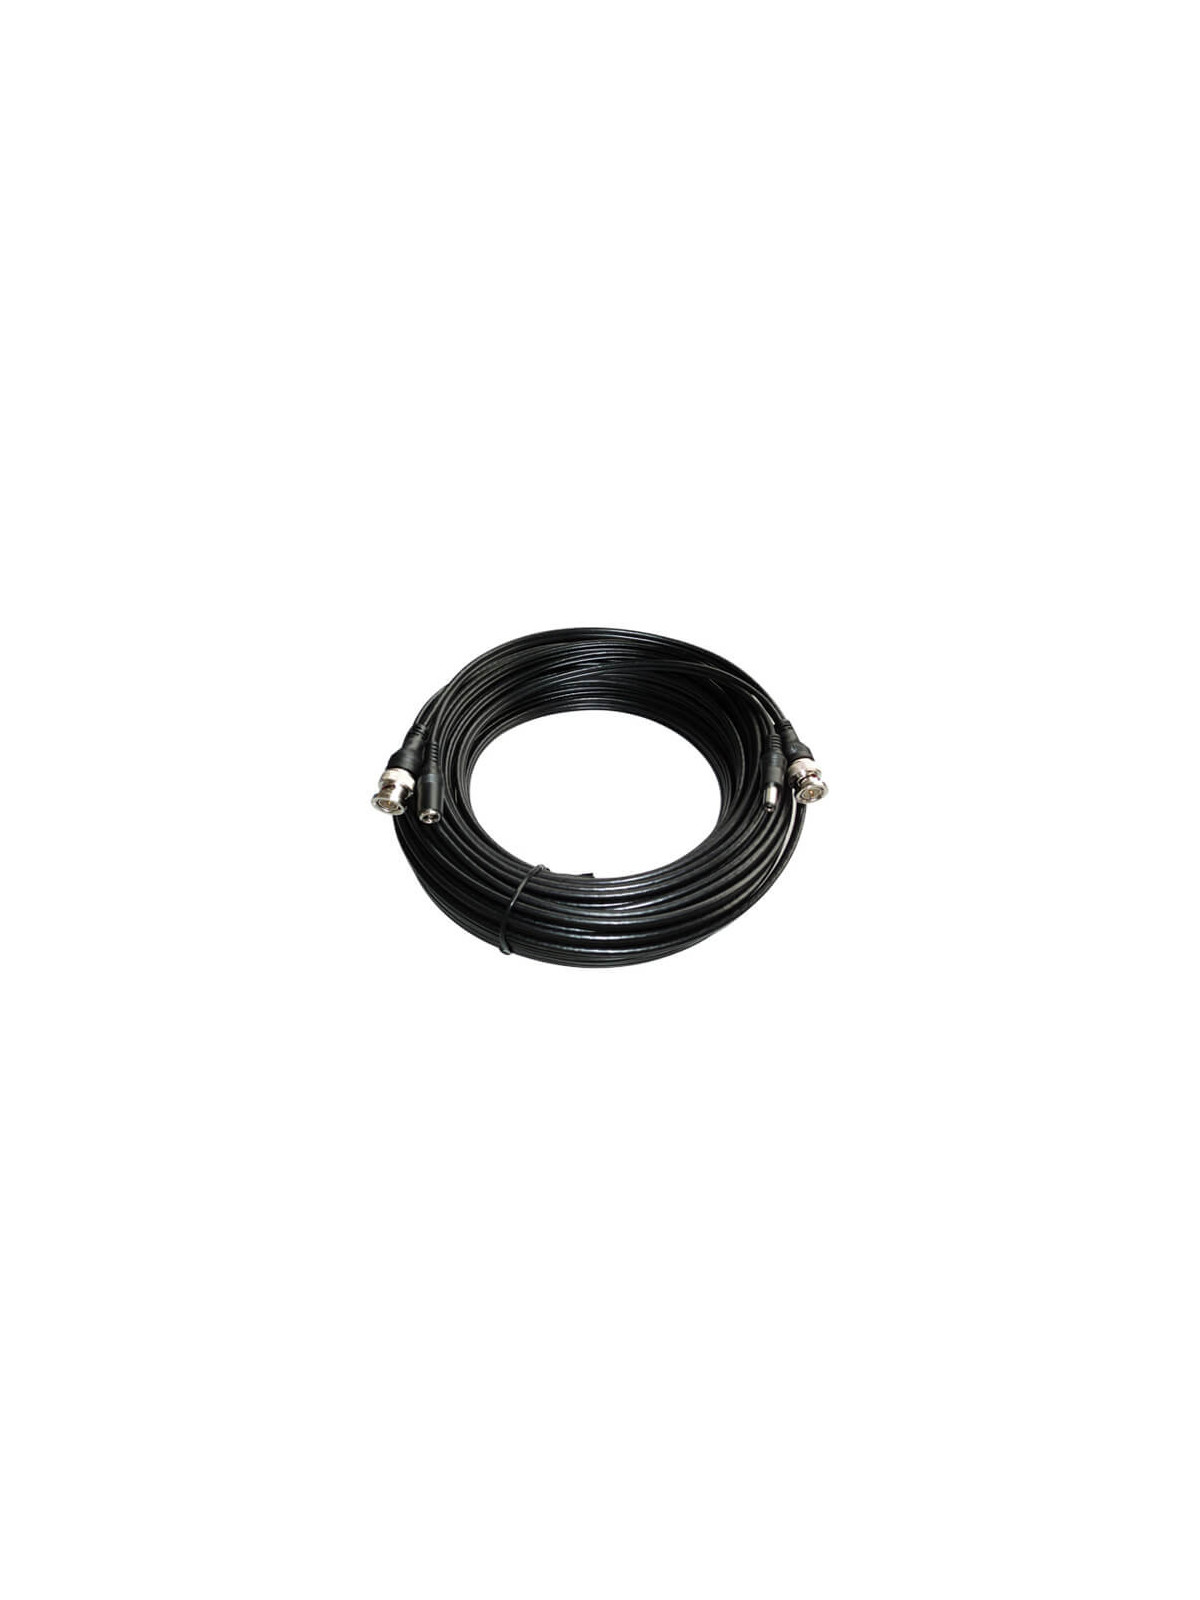 Cable alargo  coaxial RG59 BNC + alimentación negro (30m)